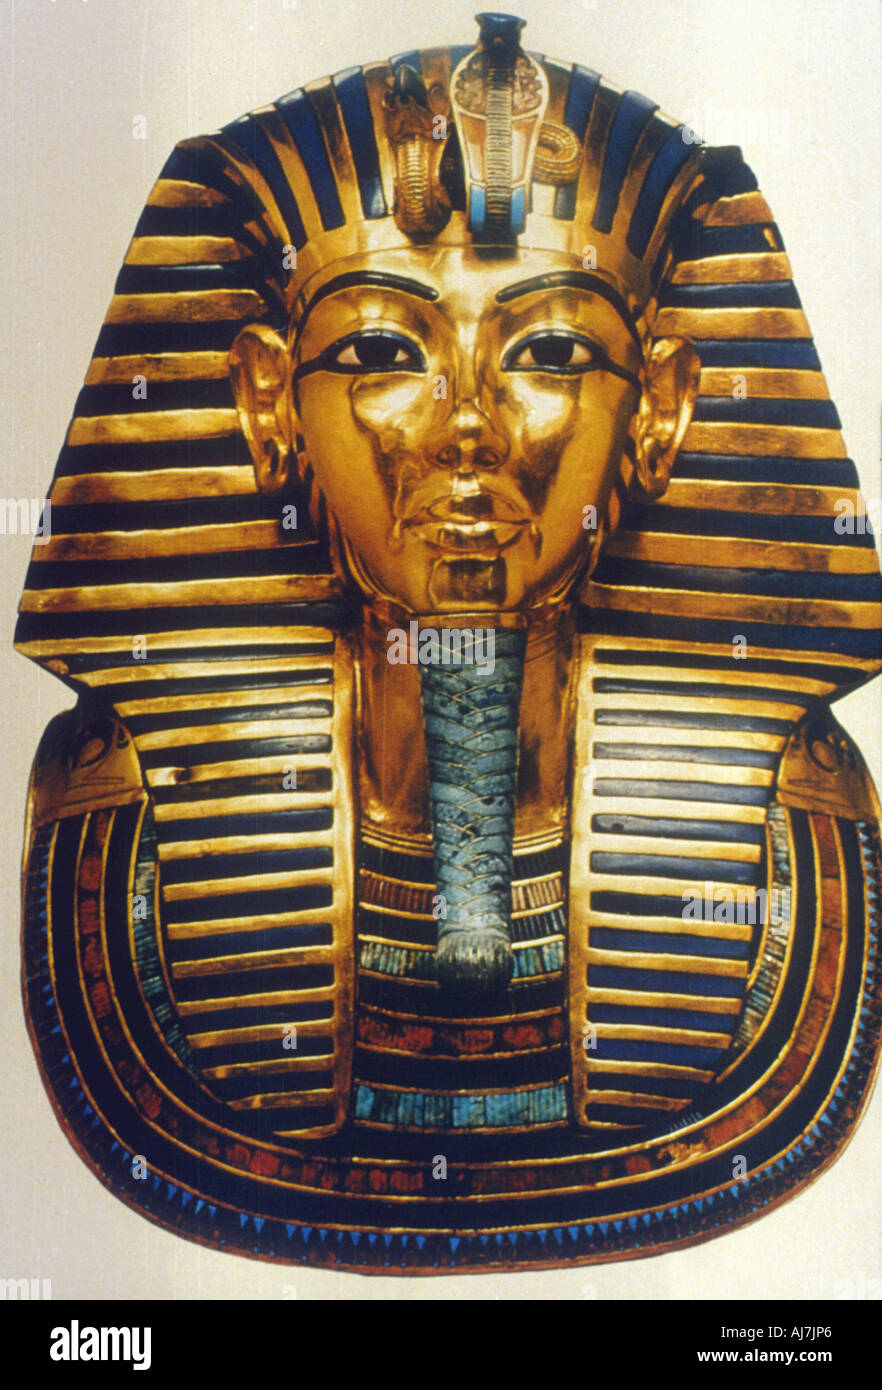 Maschera di tutankhamon immagini e fotografie stock ad alta risoluzione -  Alamy